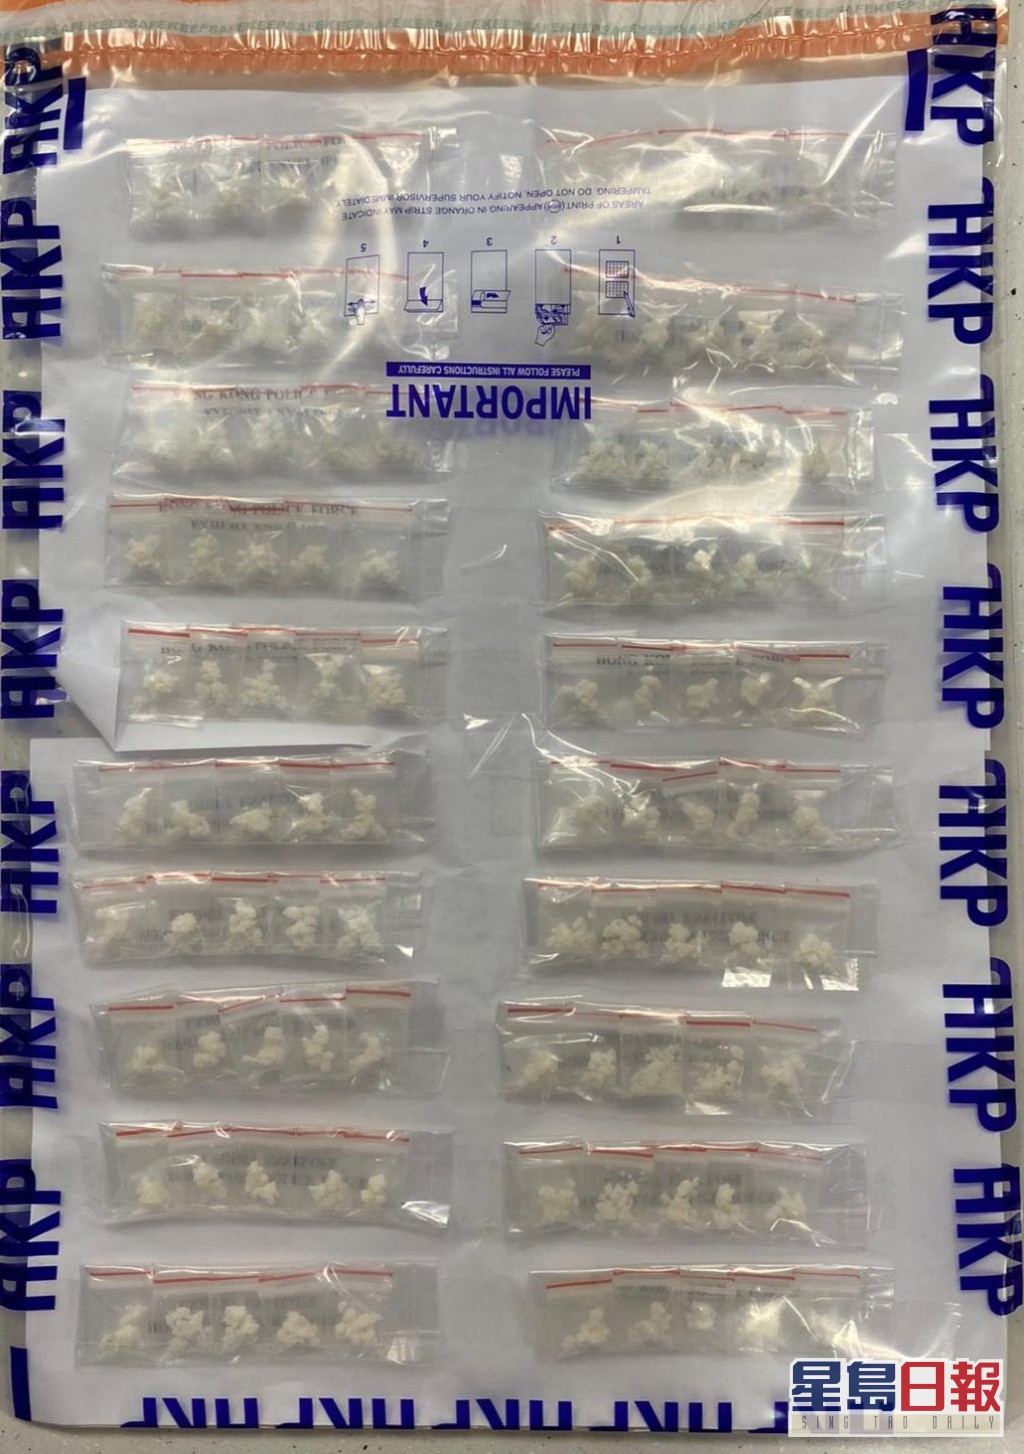 警方检获市值约13万元的毒品。警方图片